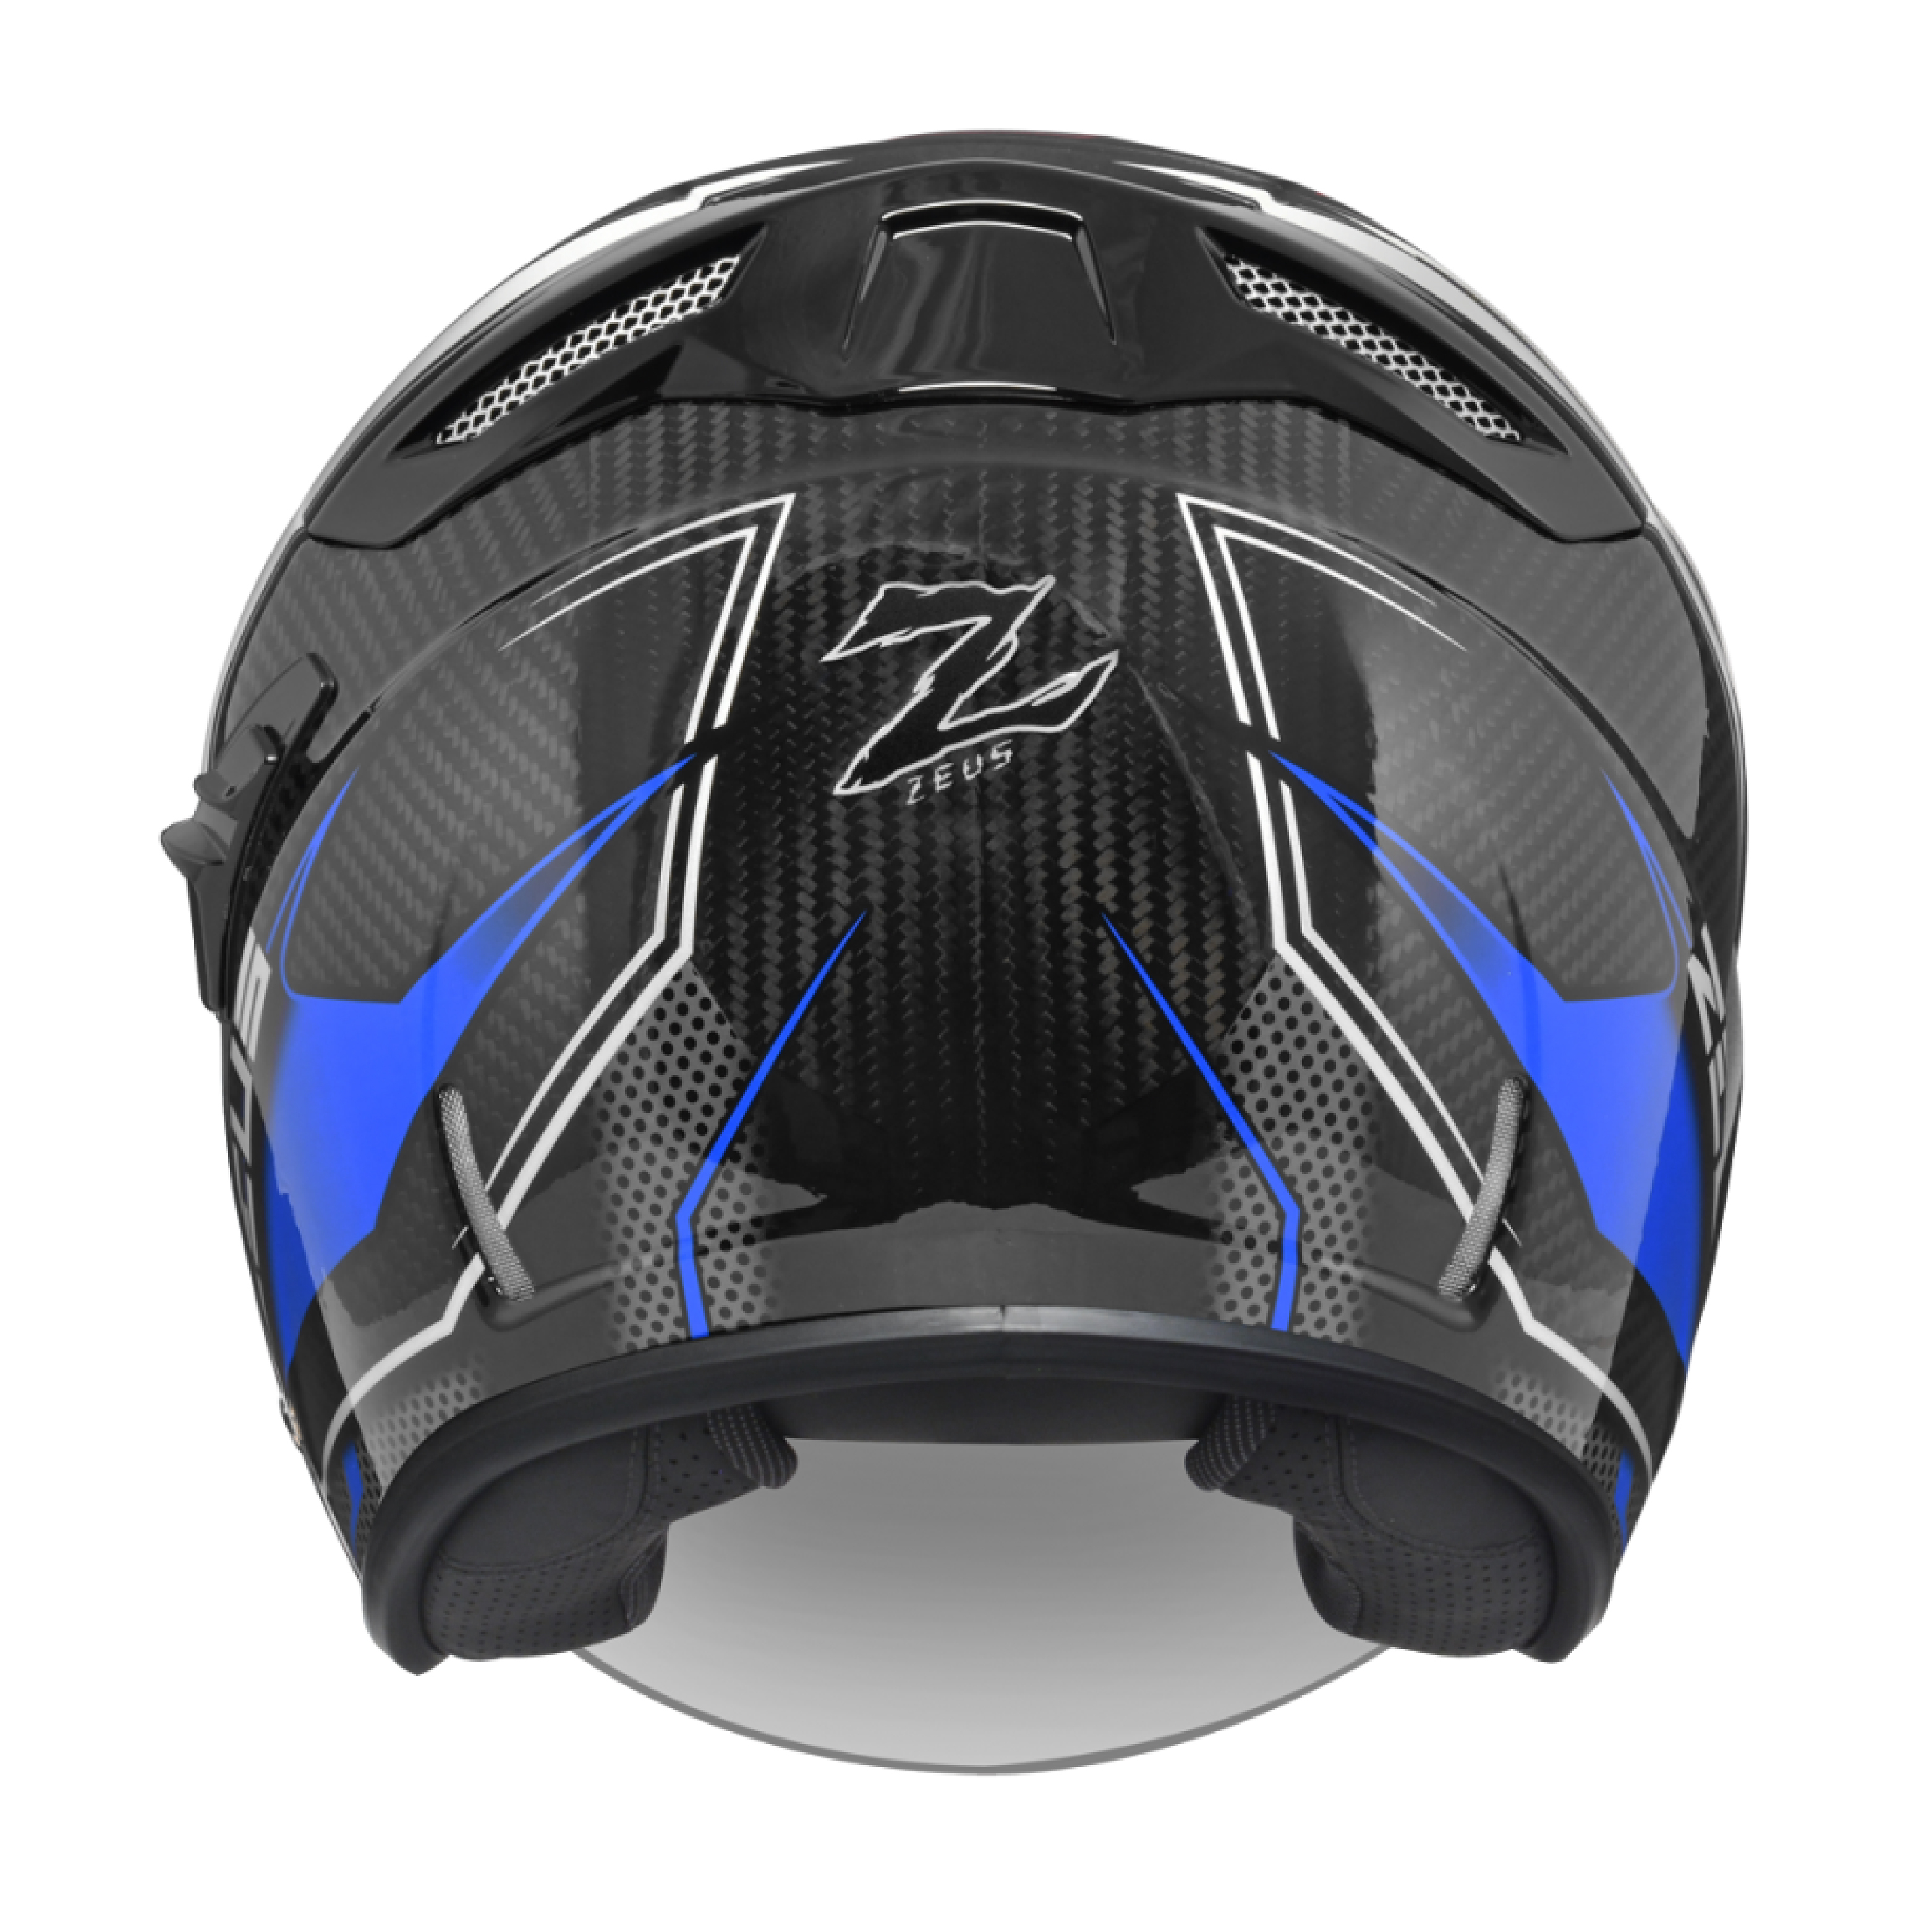 ZEUS ZS-625 FF25 電單車頭盔 - Leelik利力電單車行有限公司